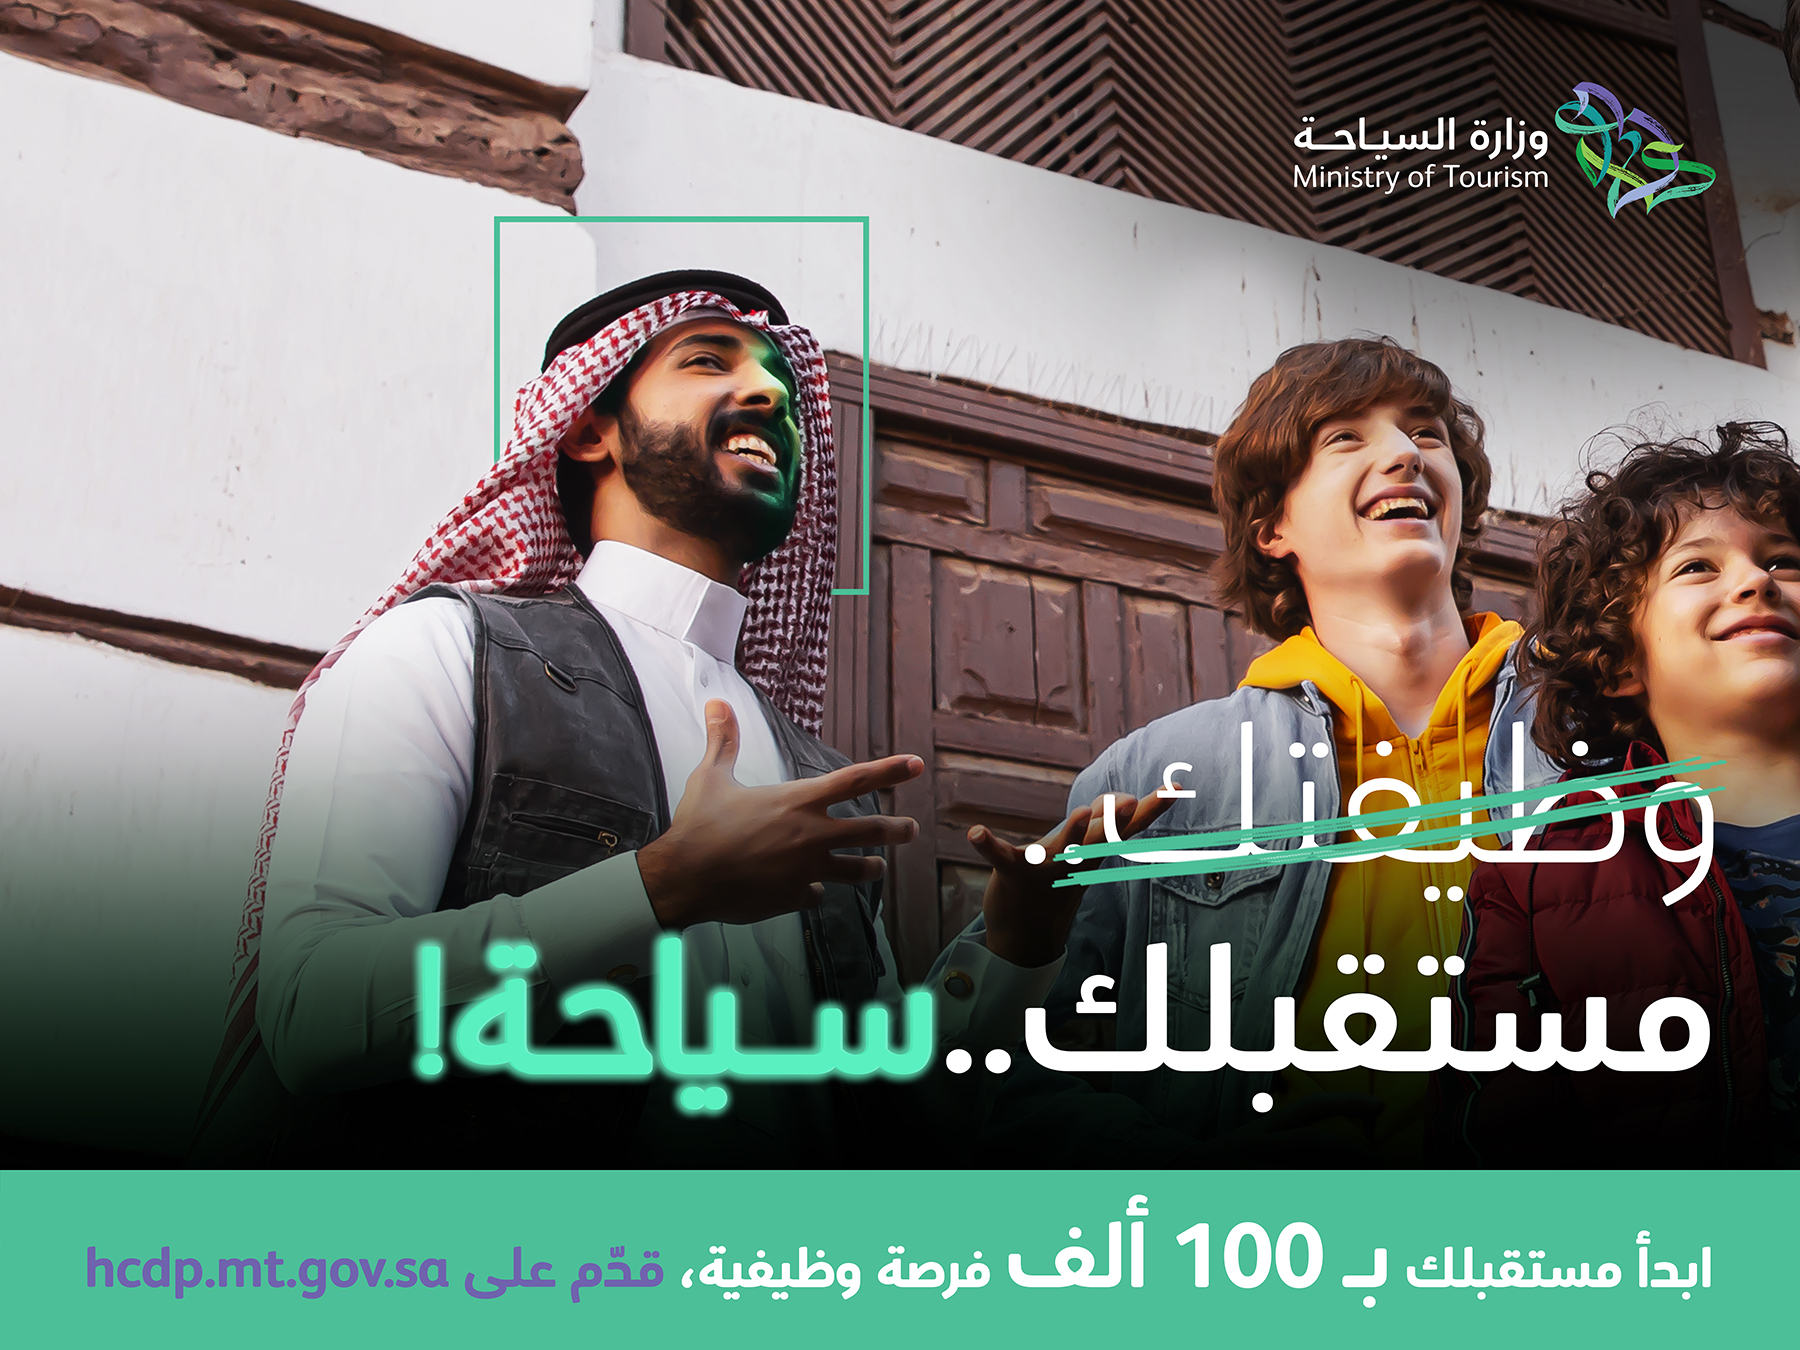 وزارة السياحة تطلق حملة “مستقبلك سياحة” لتوفير 100 ألف فرصة وظيفية للكوادر الوطنية